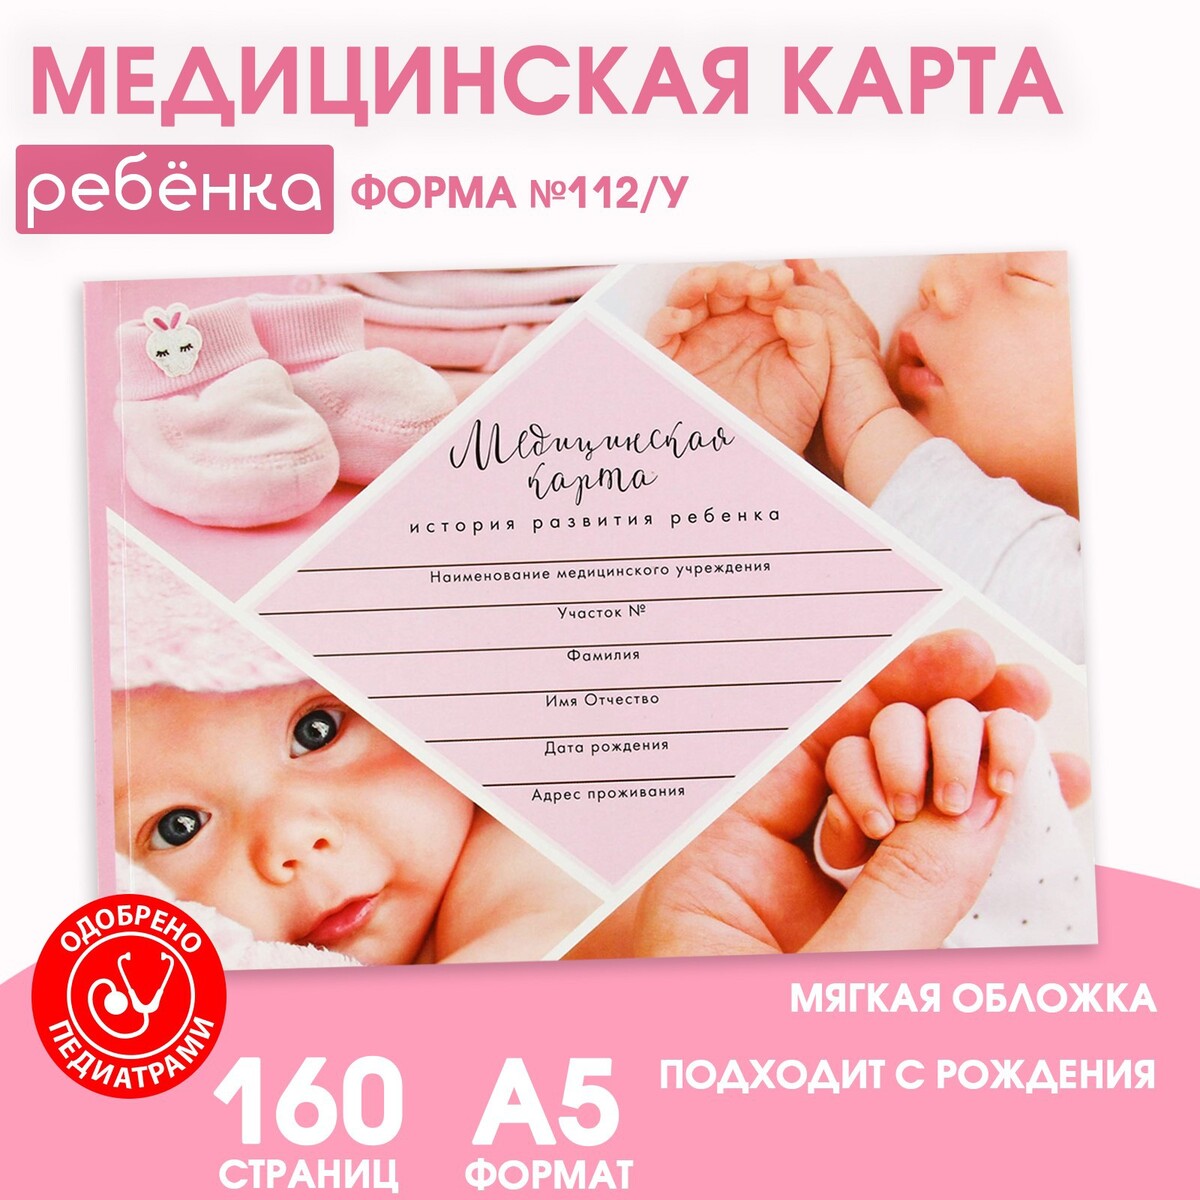 Медицинская карта ребенка форма №112/у семья ребенка с ограниченными возможностями здоровья диагностика и консультироание книга cd